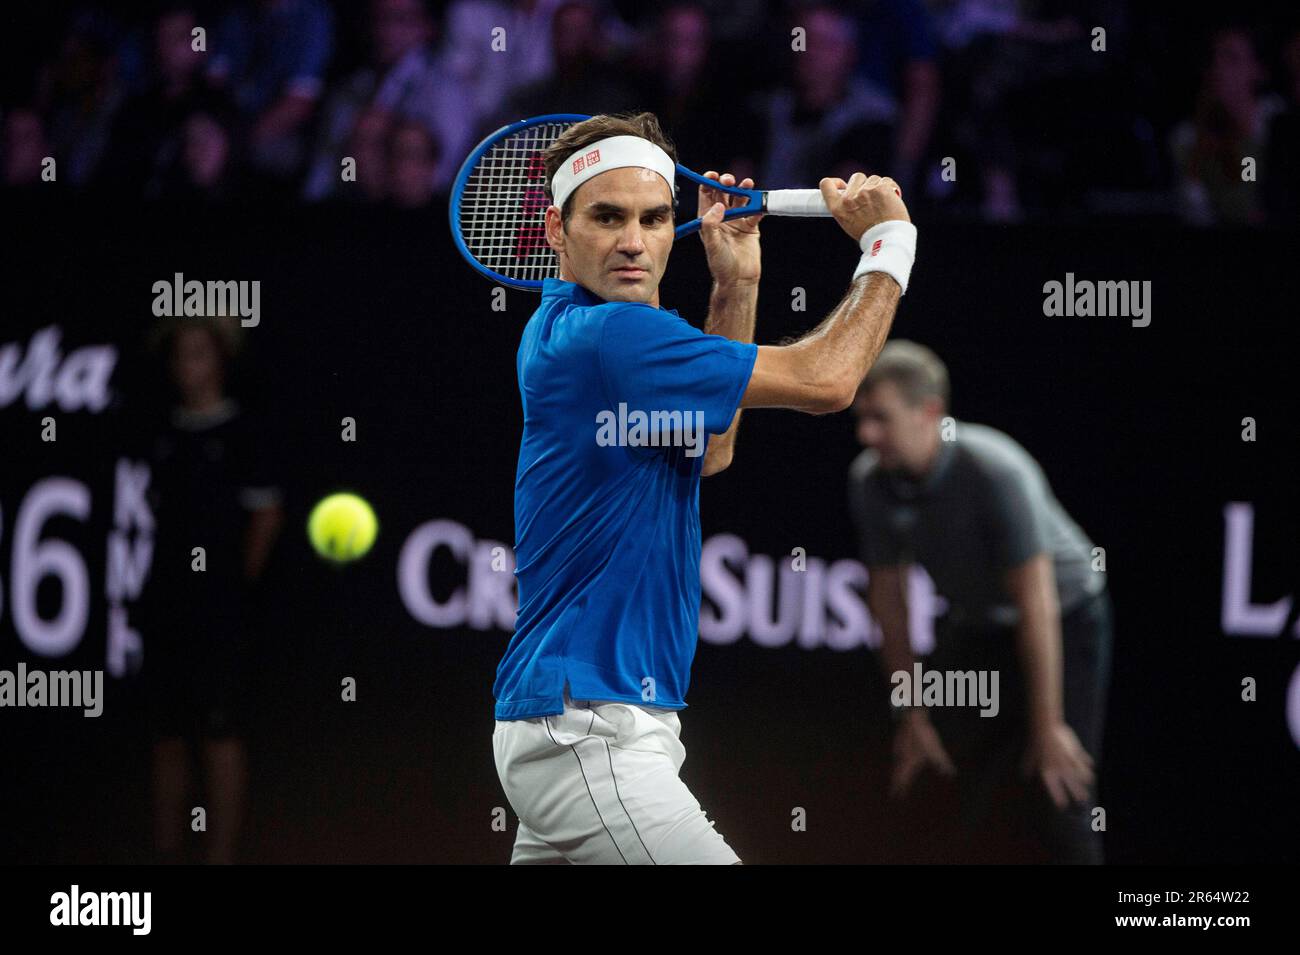 Schweiz, Genf : Profi-Tennisspieler Roger Federer, Team Europe, beim Laver Cup 2019 Stockfoto